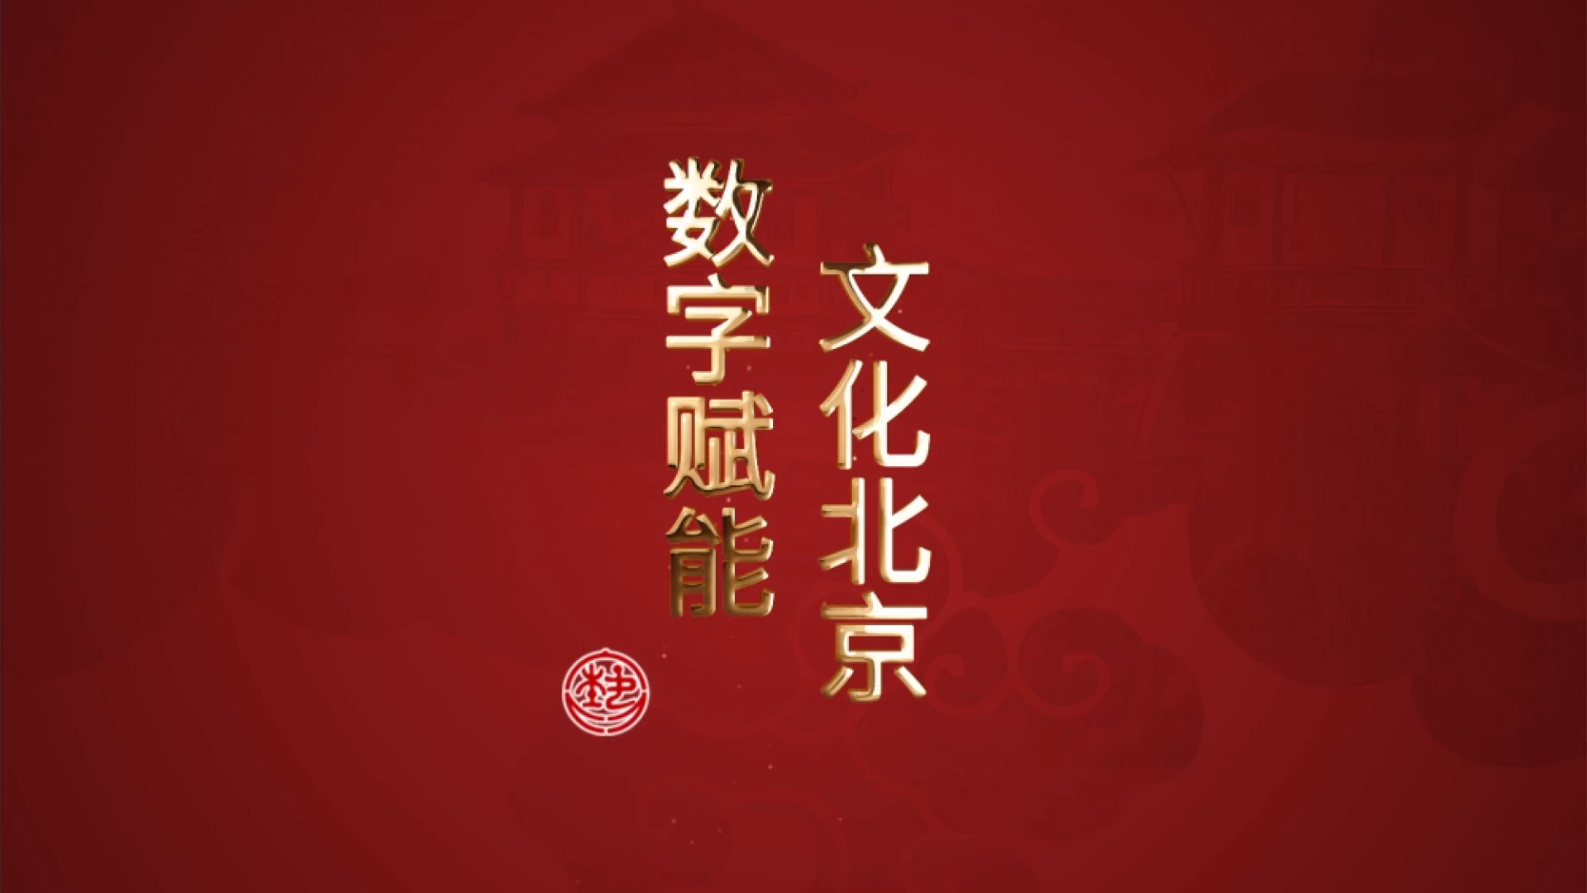 数字赋能 文化北京之龙在天皮影博物馆带看